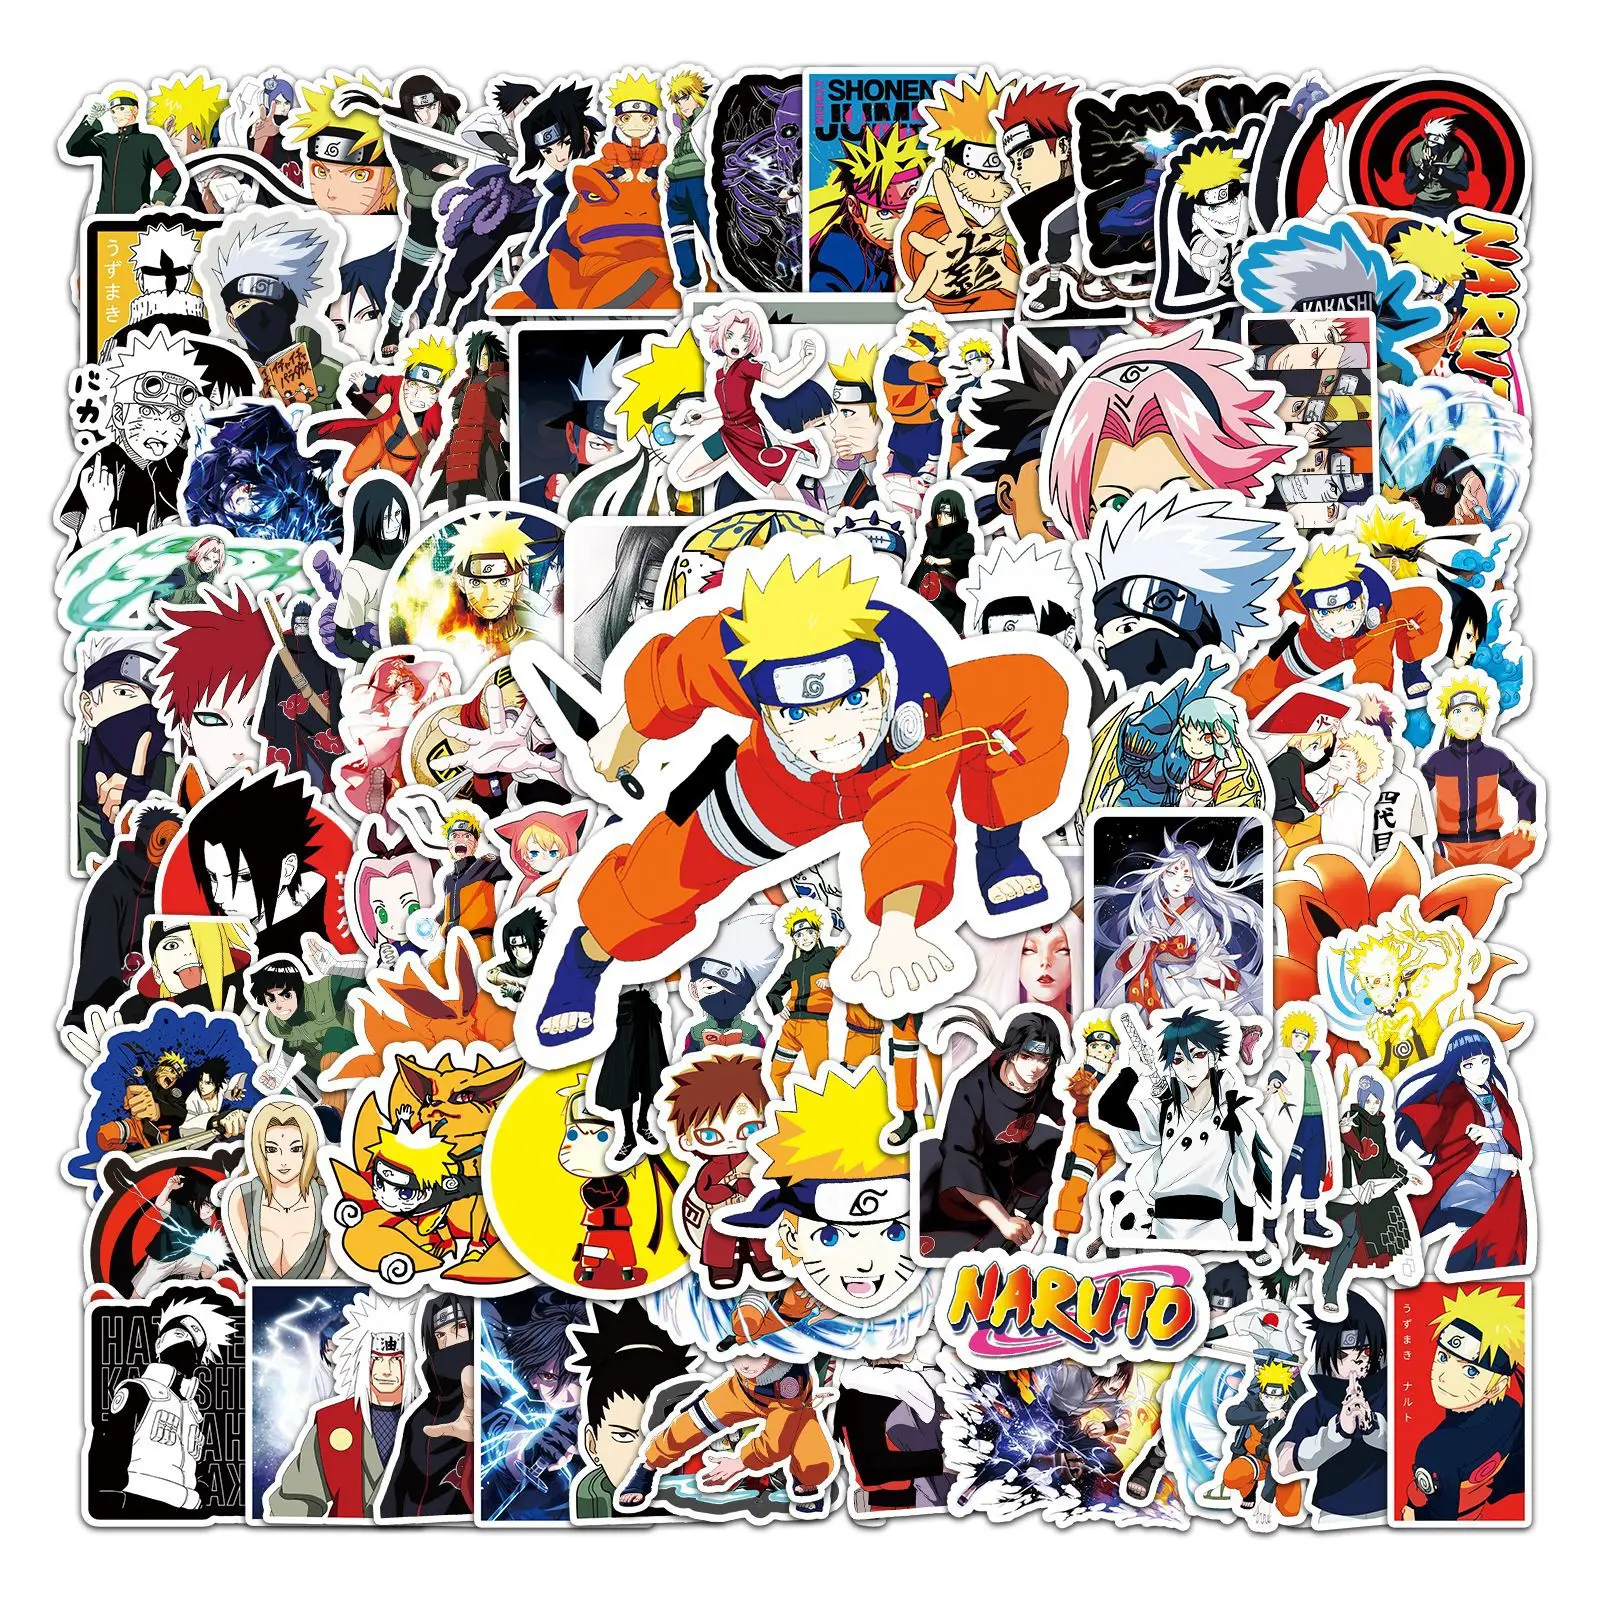 Naruto kakashi viajar etiquetas da bagagem, desenhos animados